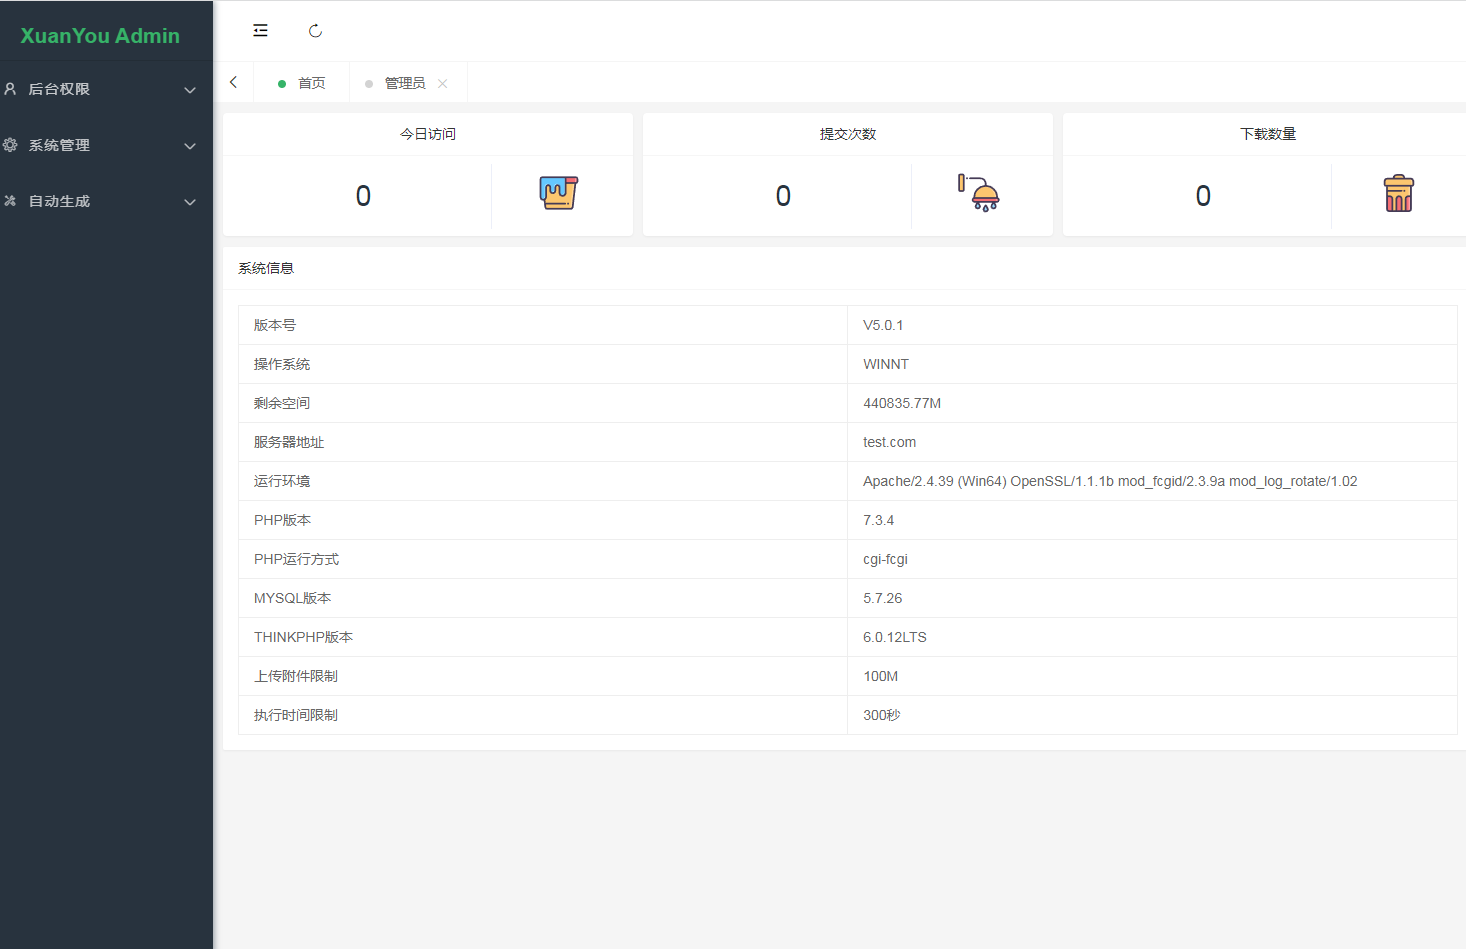 山东炫佑科技更新后台程序升级为XuanYou AdminV6版